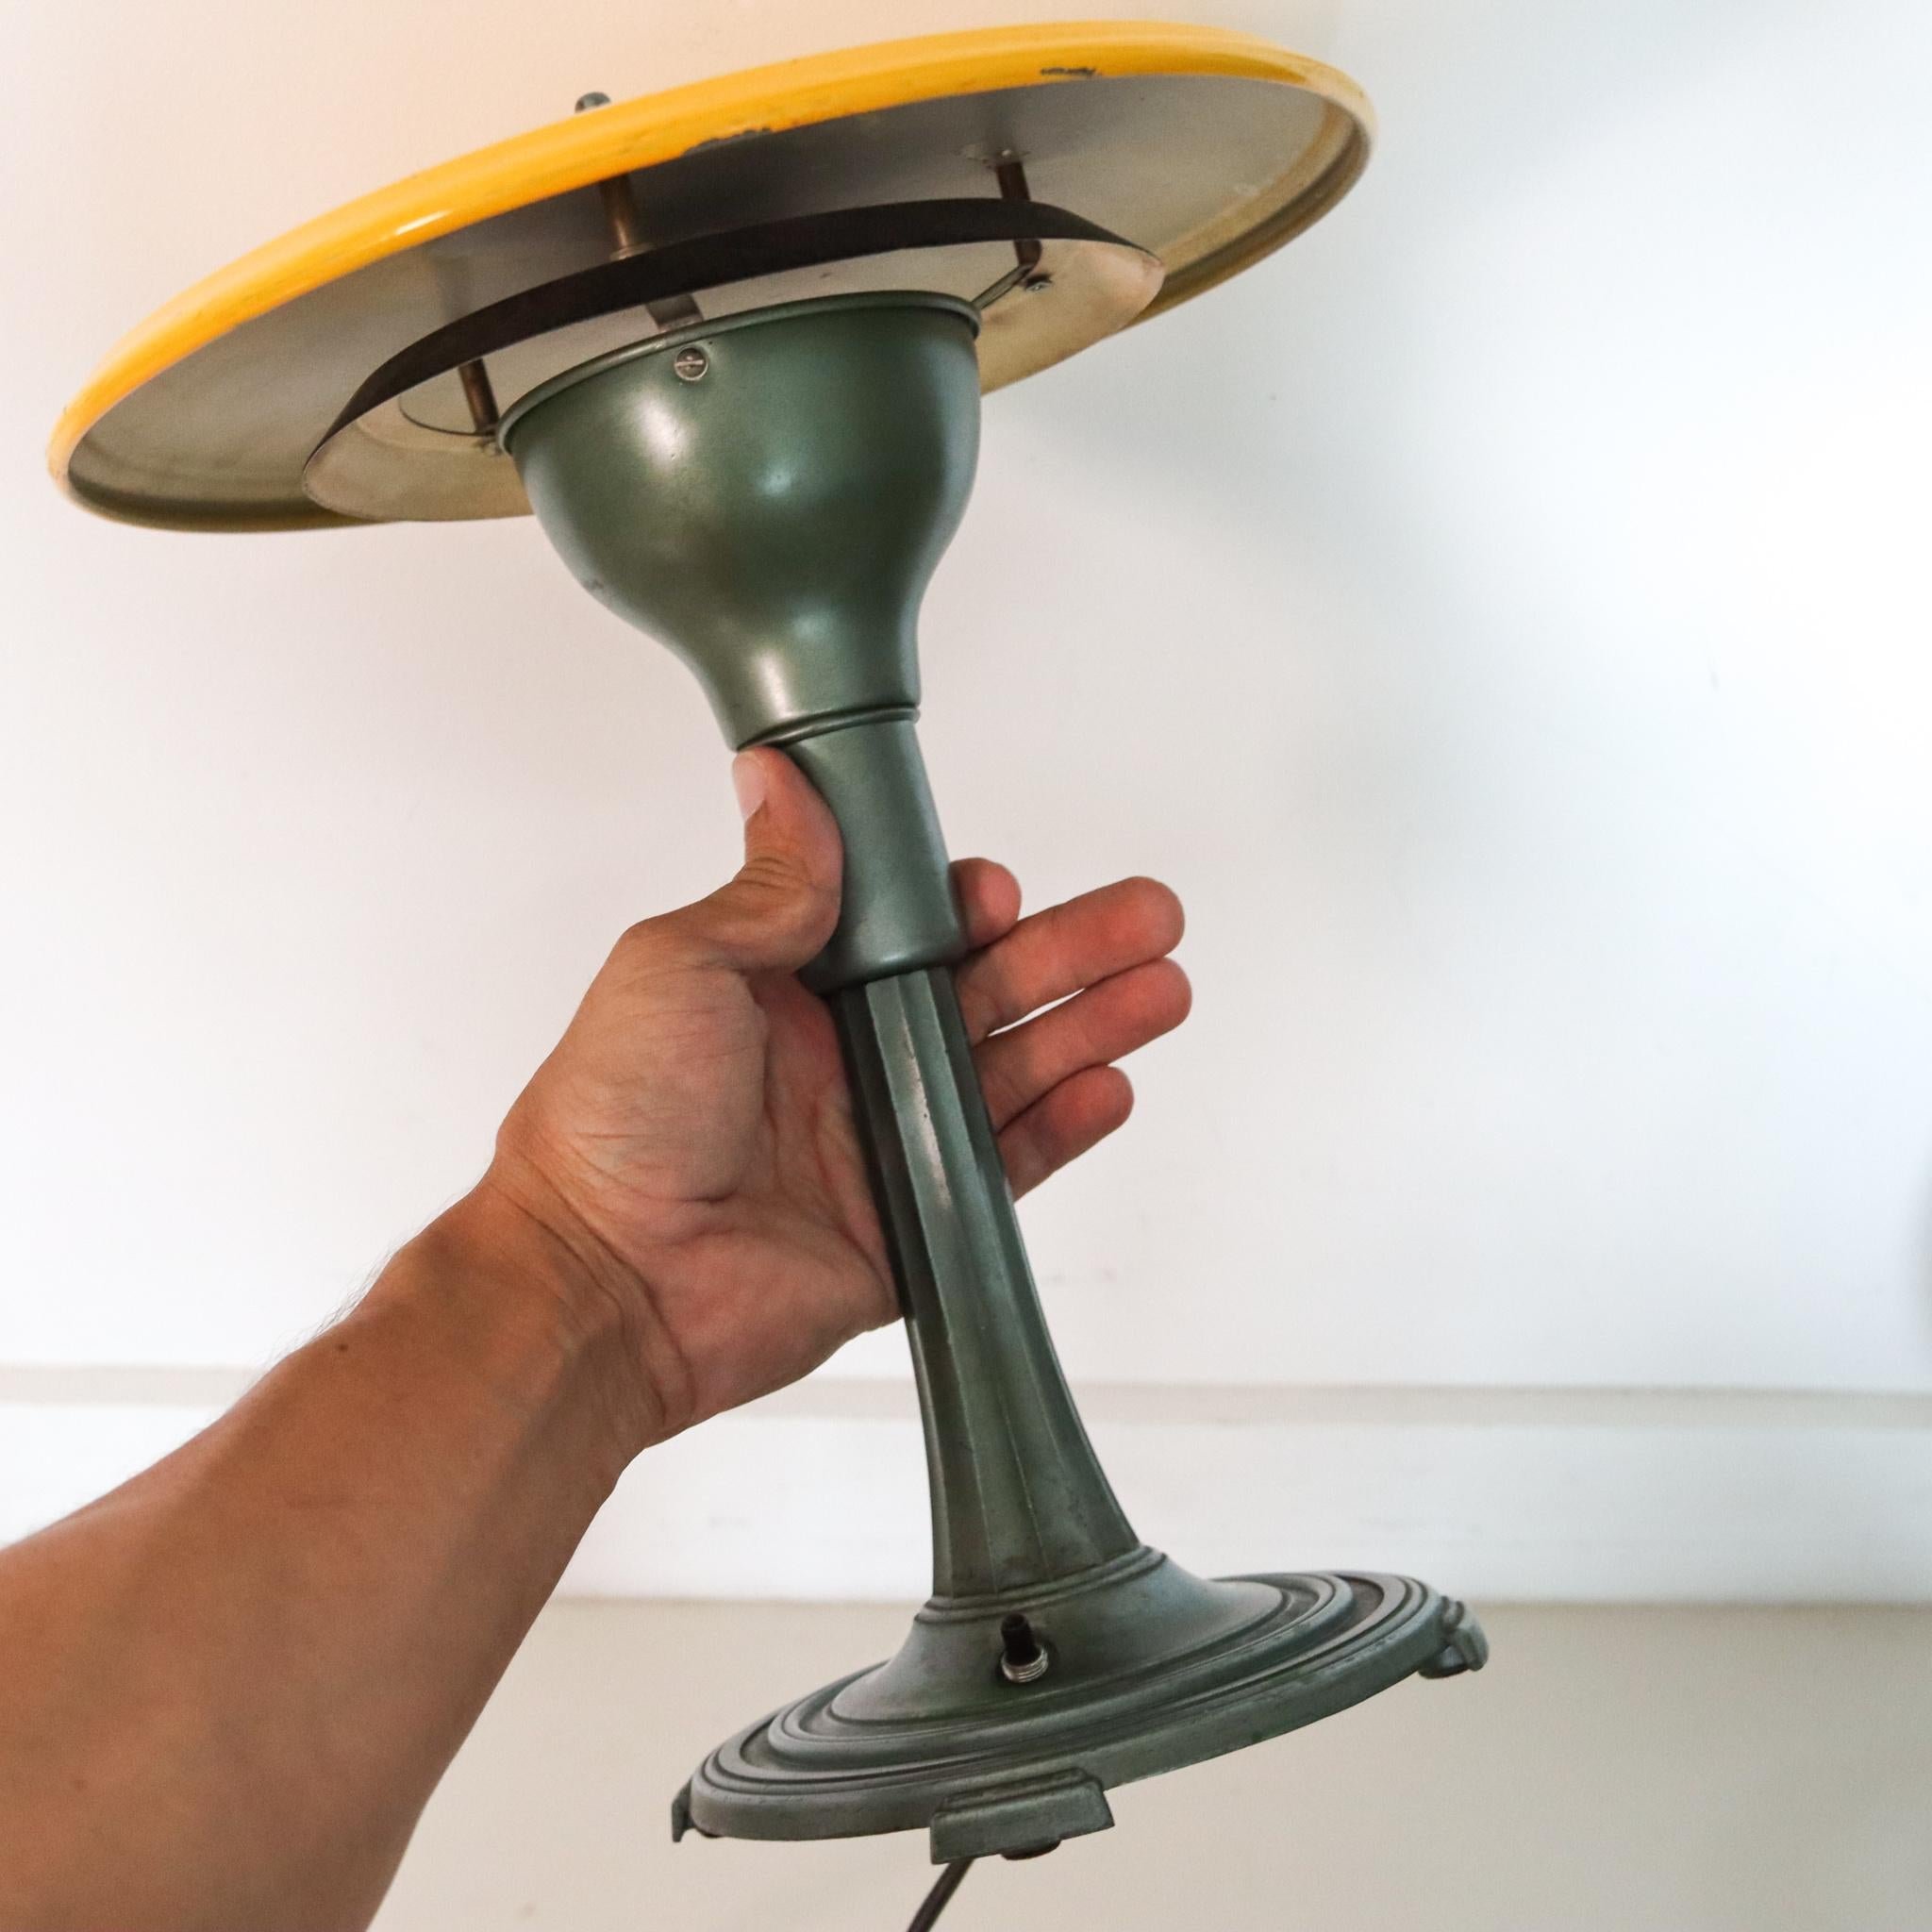 Eine von Melville entworfene Art-Deco-Tischlampe. G. Willer

Schöne stilvolle SightLight Tischlampe, die in Amerika während der Art-Deco-Periode in den 1930er Jahren geschaffen wurde. Diese ikonische elektrische Lampe wurde von Melville entworfen.